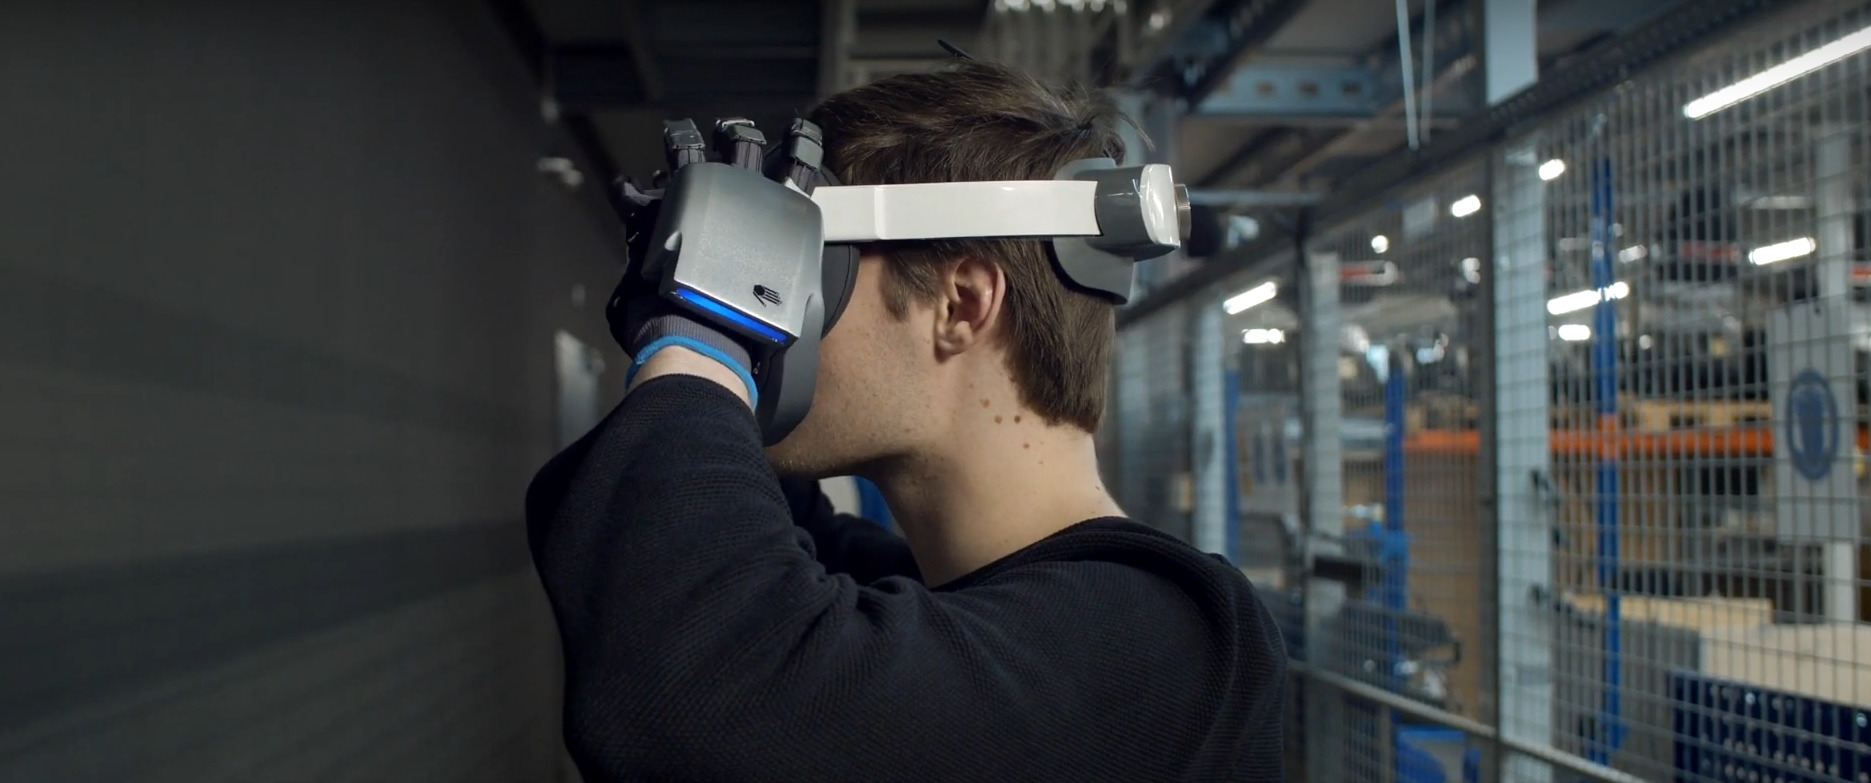 Rękawice VR z technologią haptyczną do szkolenia pracowników